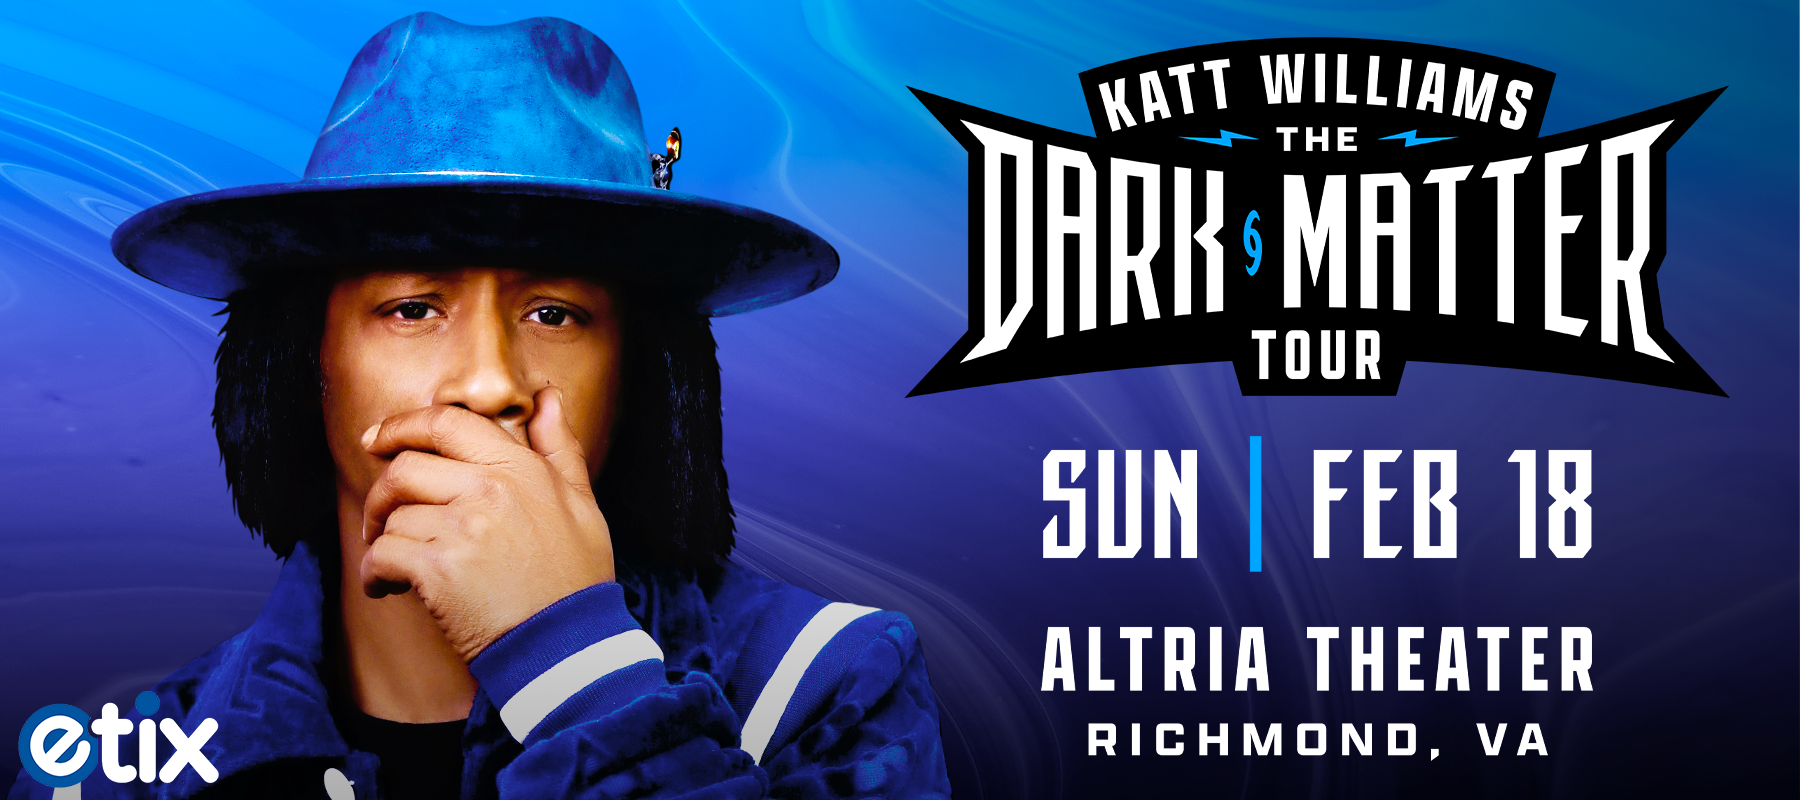 Katt Williams The Dark Matter Tour Altria Theater Official Website